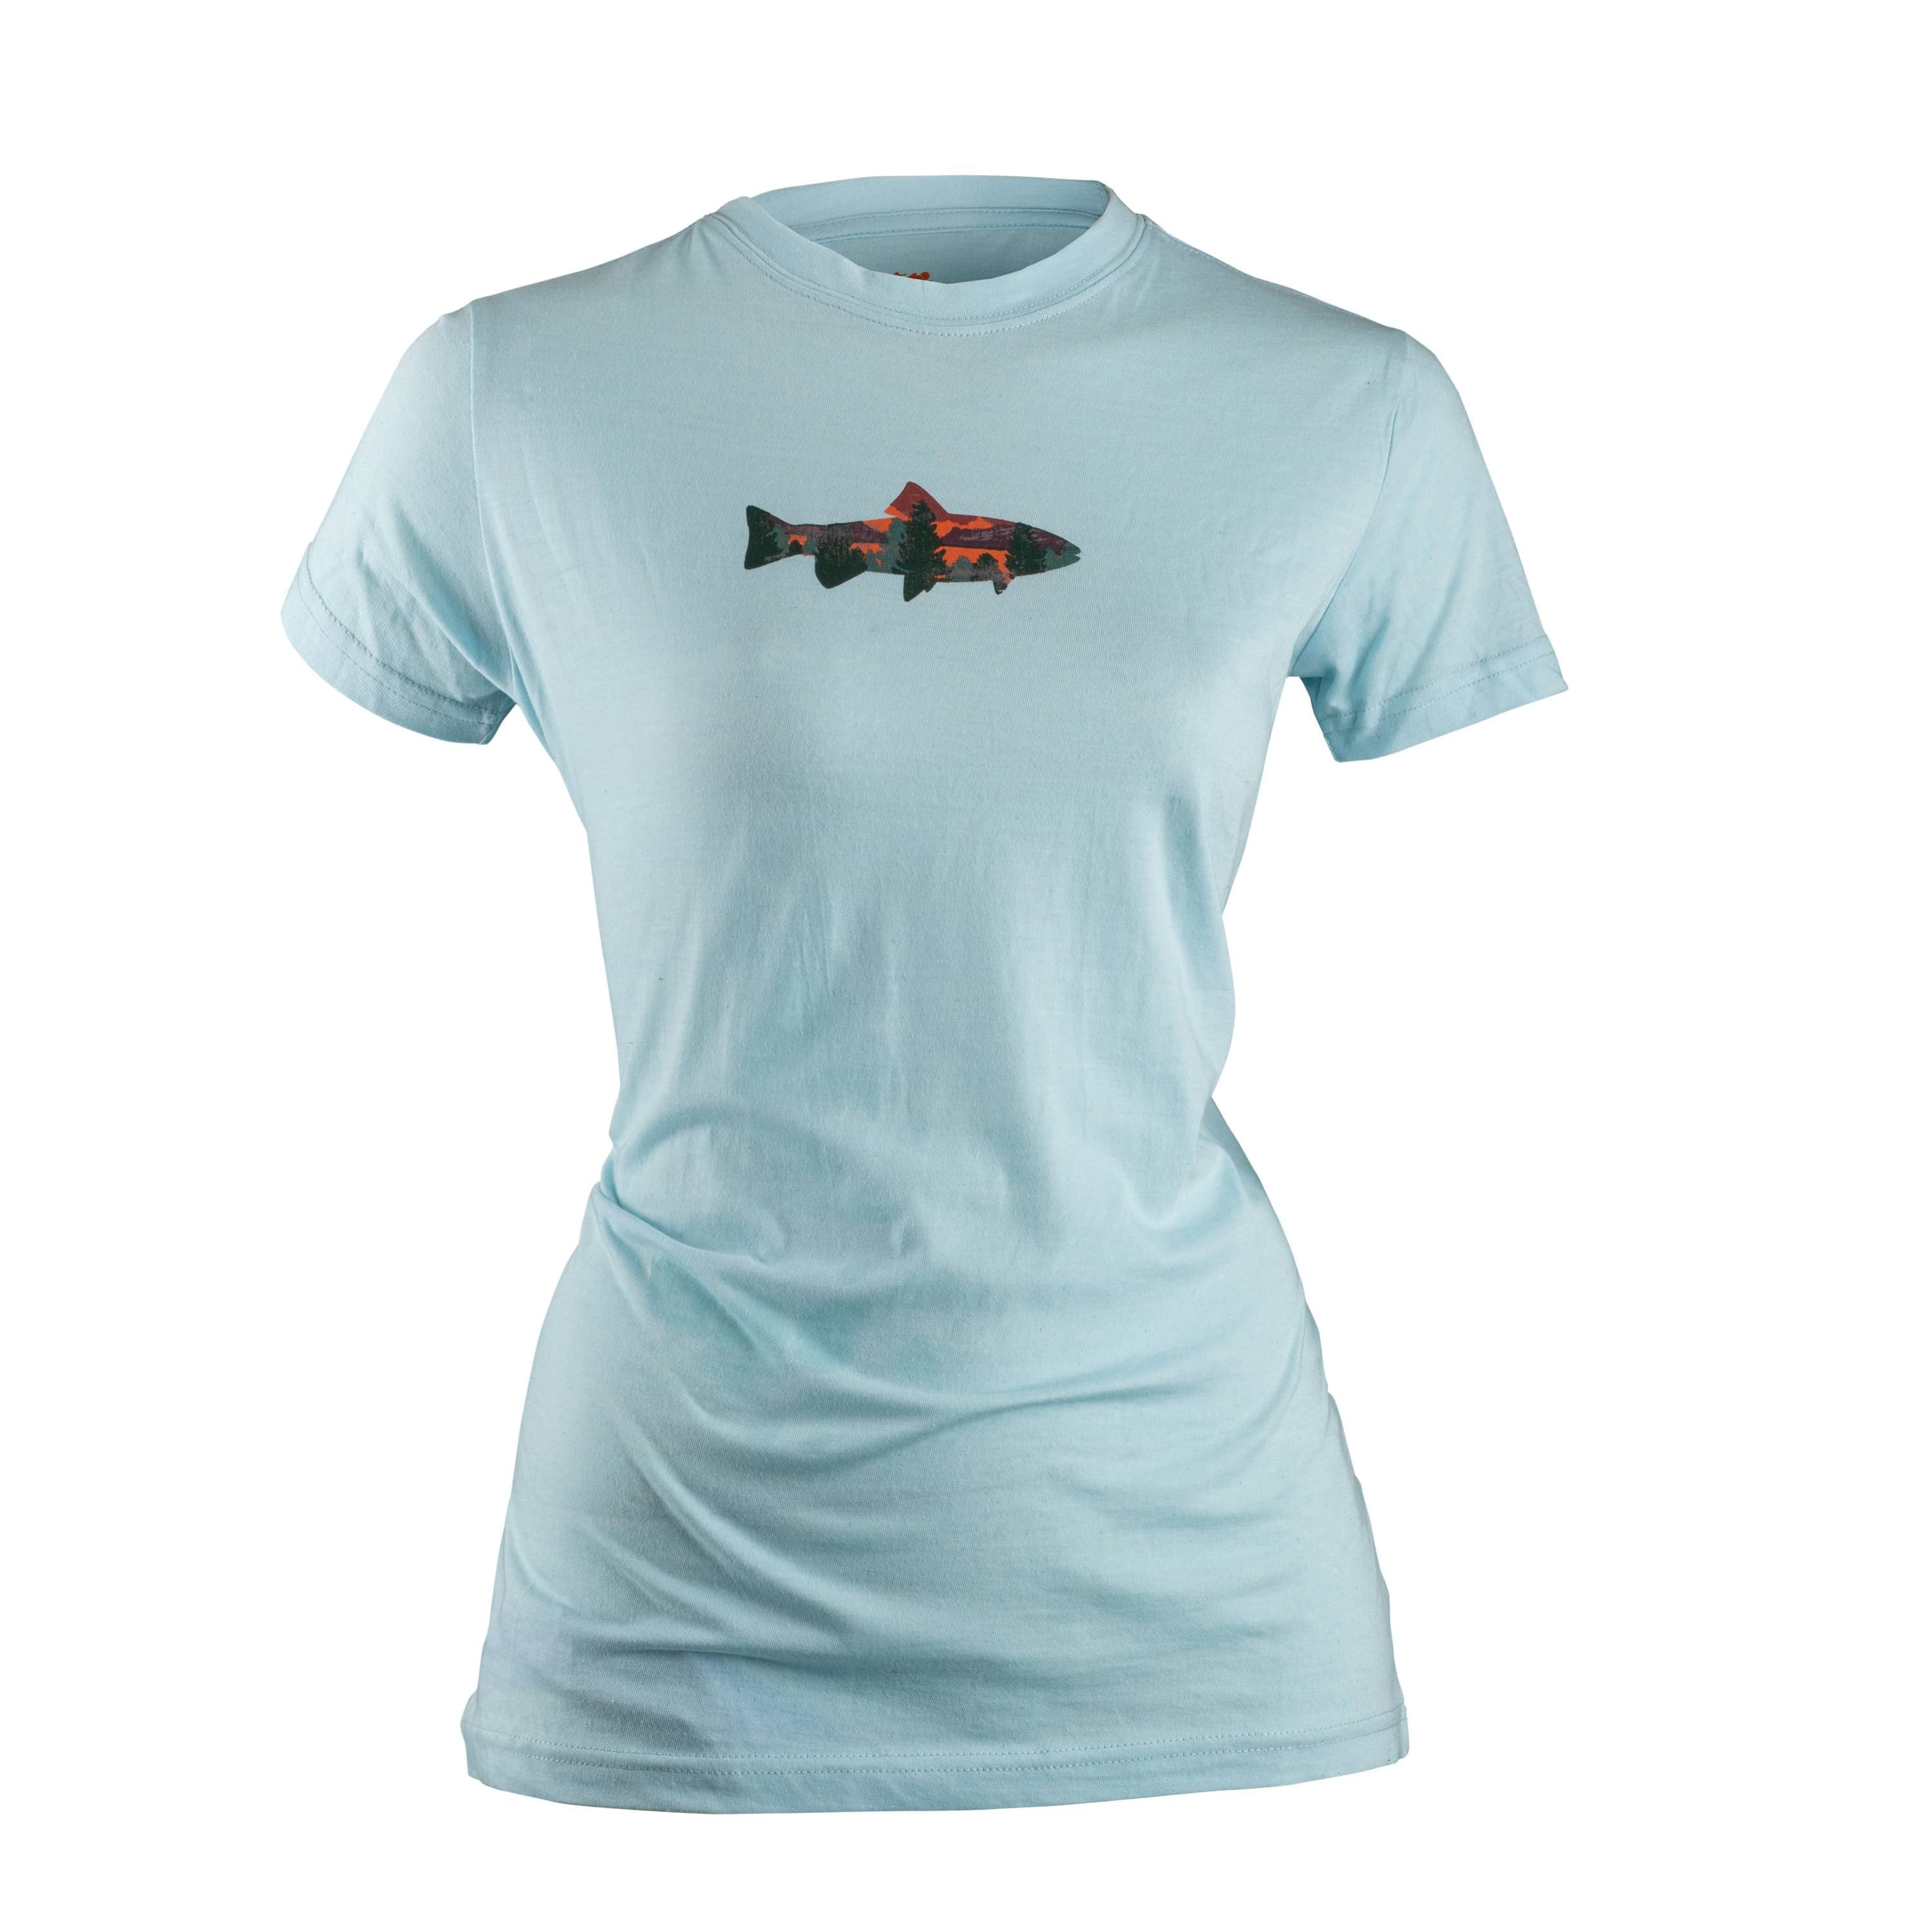 "Fish" T-shirt - Women's